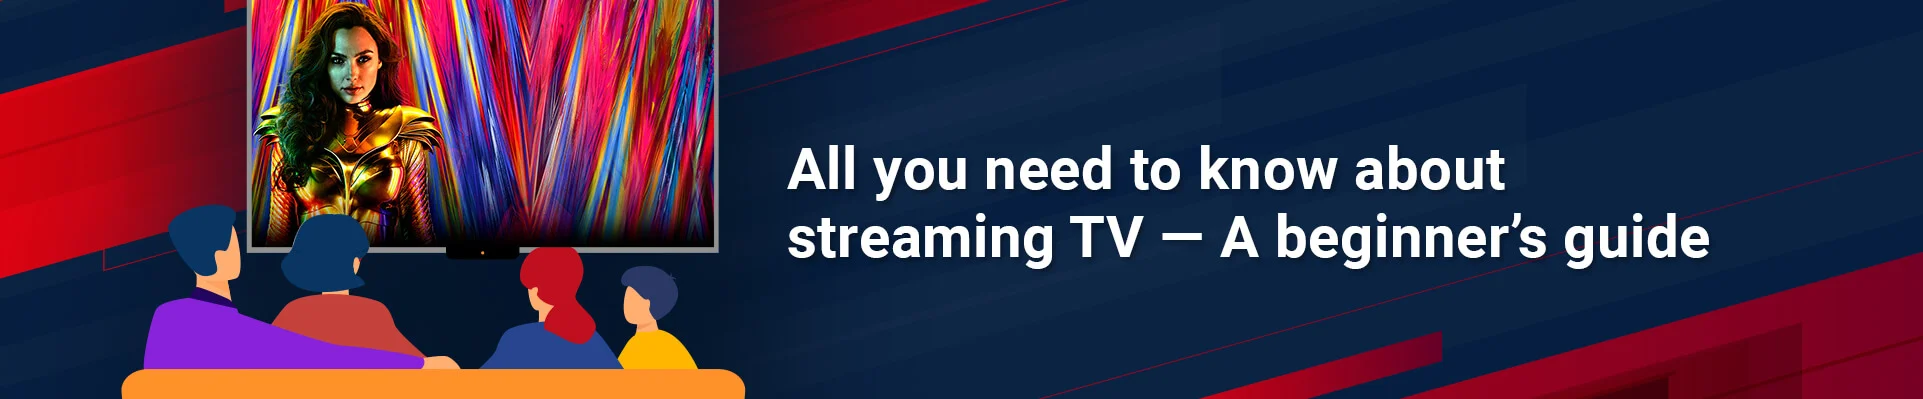 Beginner's Guide for Streaming TV